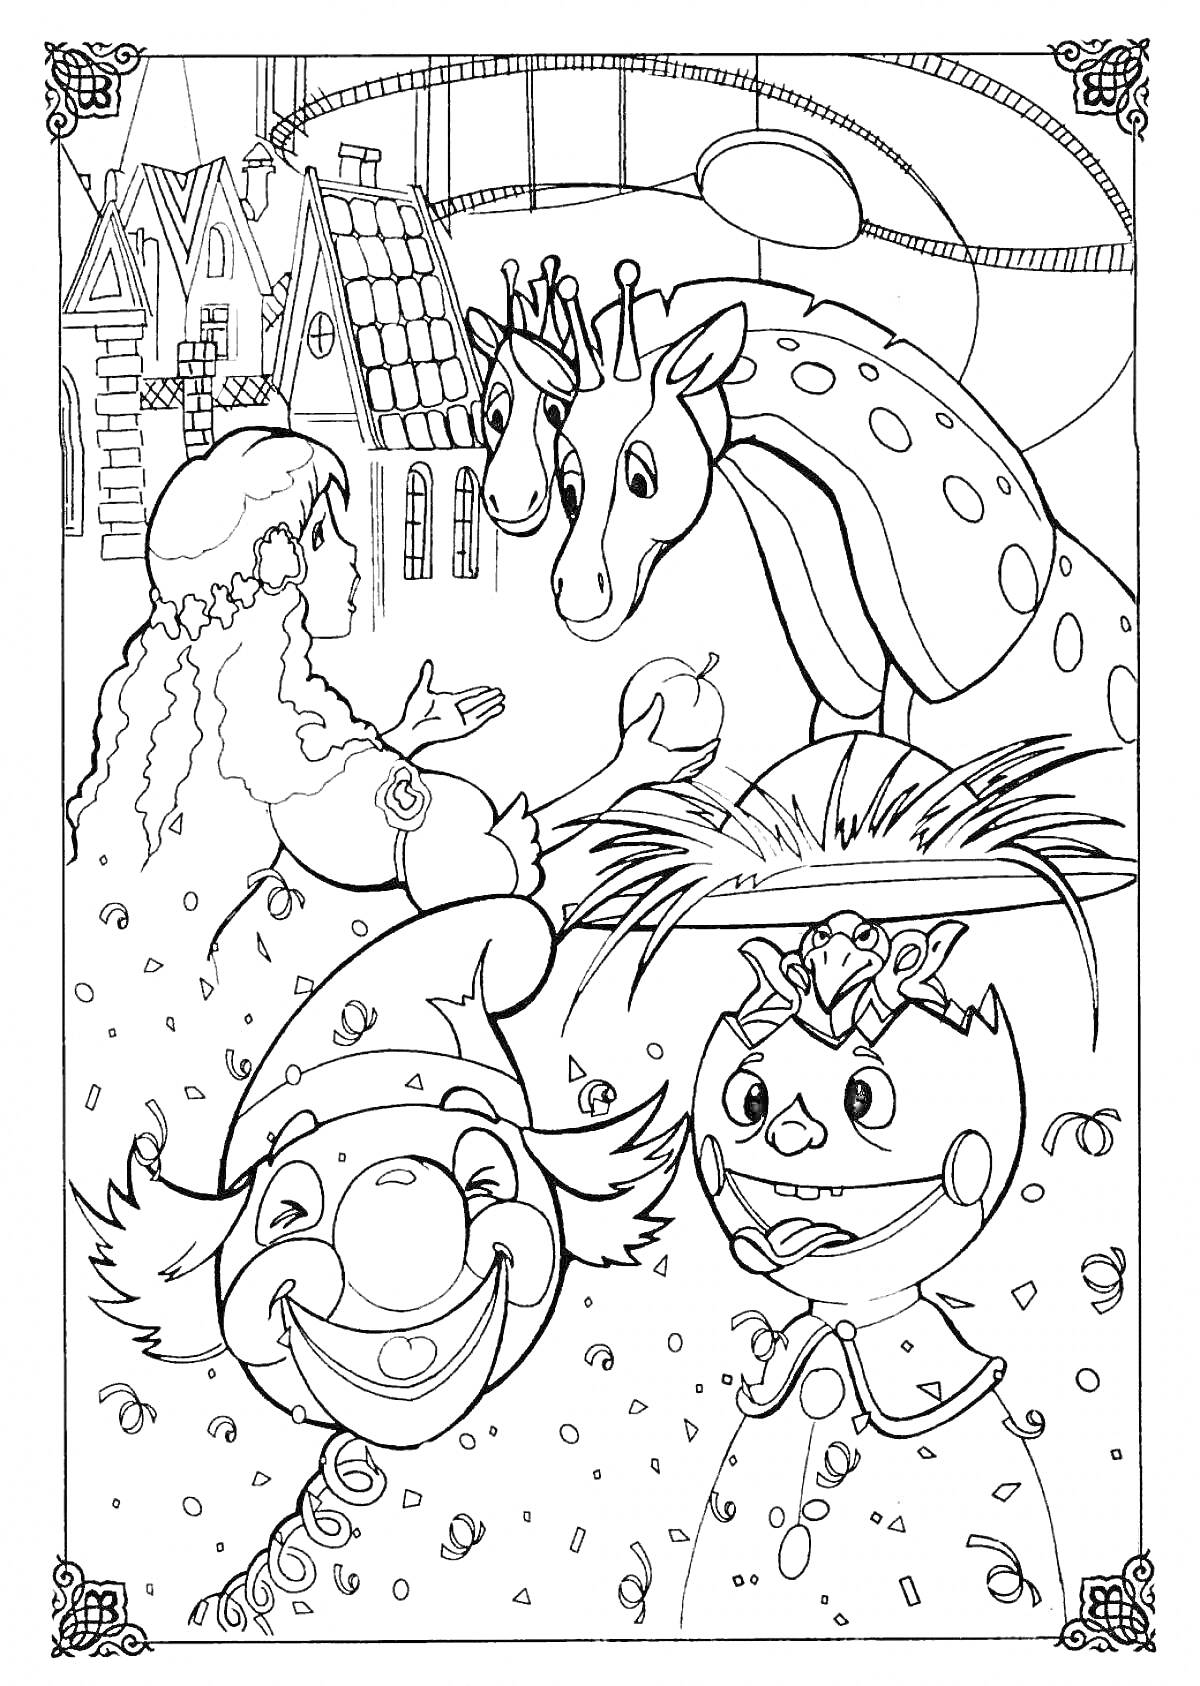 Раскраска Девочка, лошадь с короной, клоун и Щелкунчик на фоне домиков